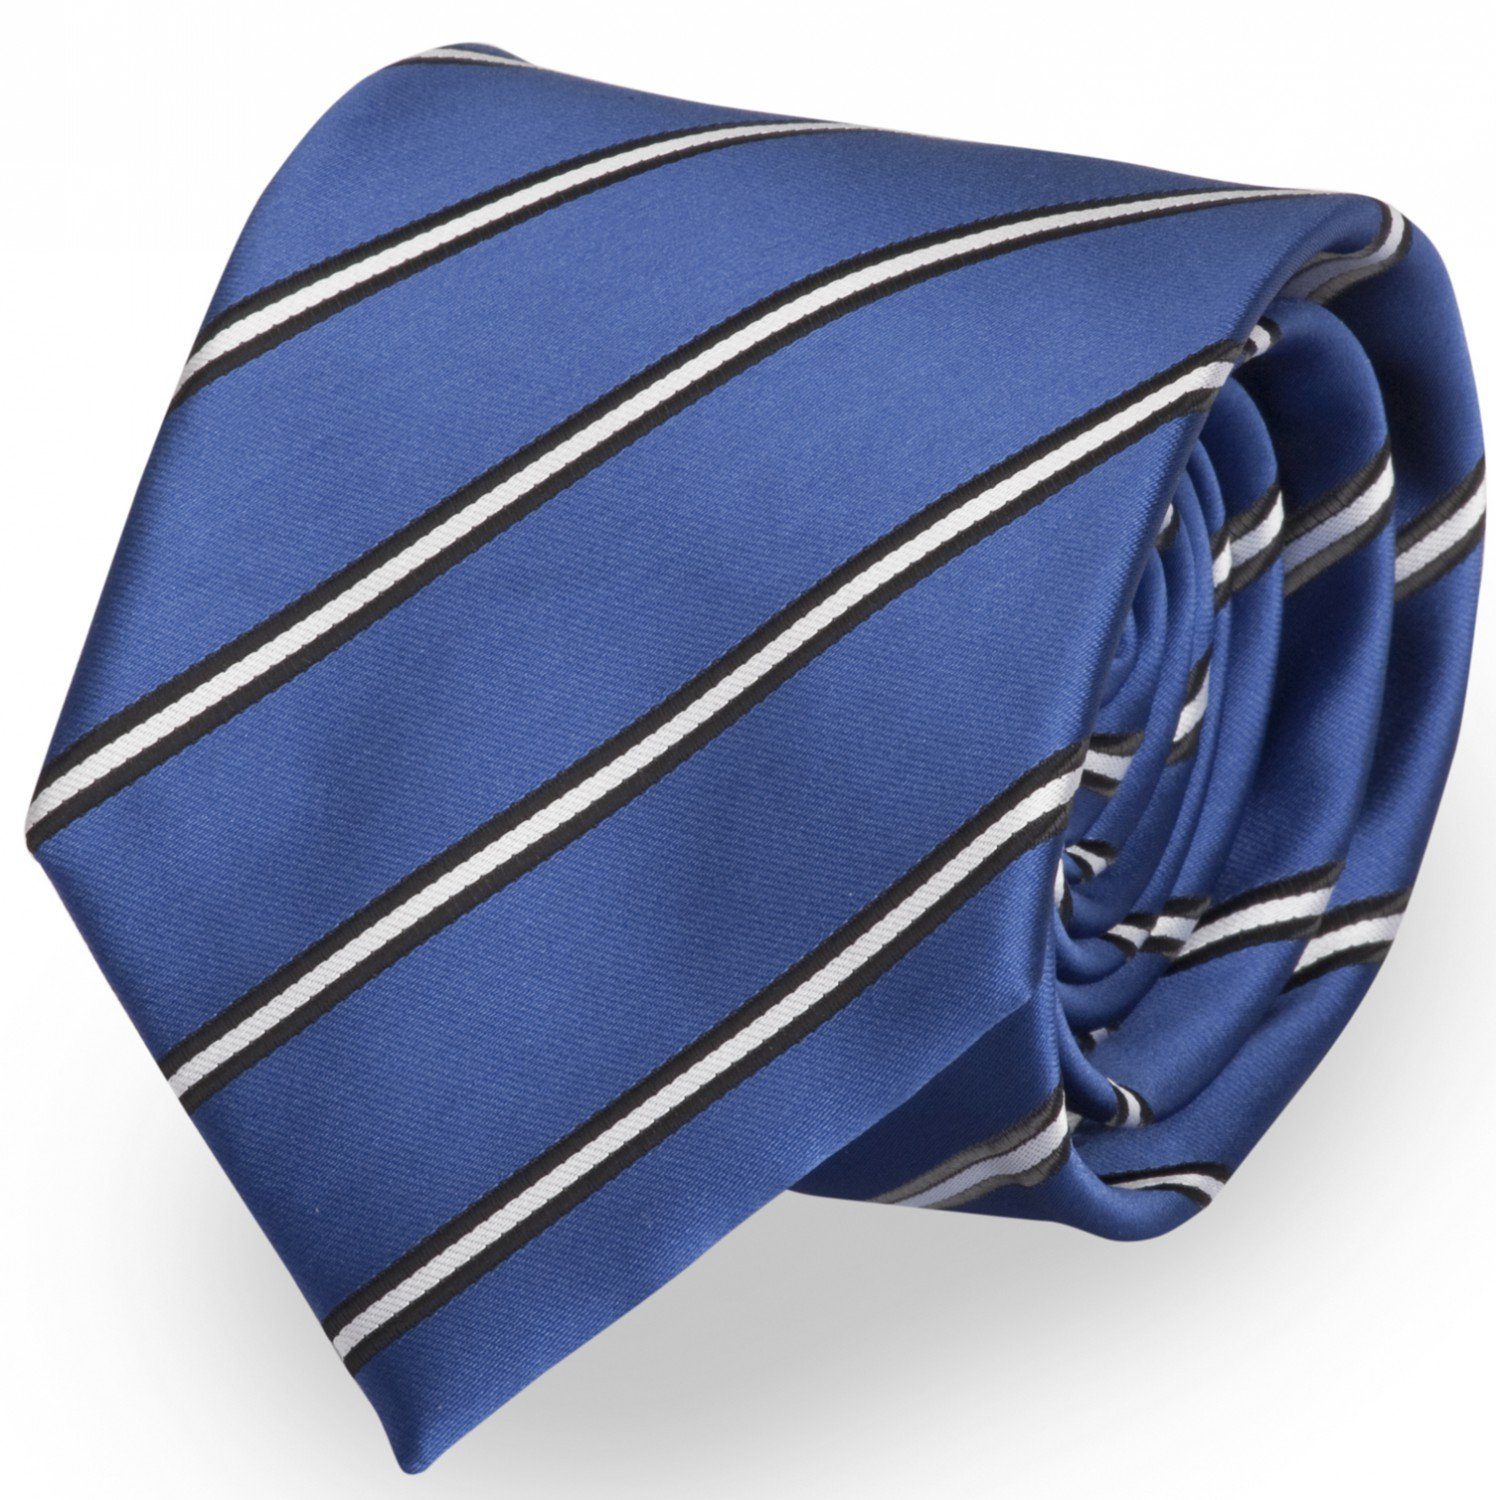 Fabio Farini Krawatte Herren Krawatten Blautöne - klassische Männer Schlipse in 8cm Breite (ohne Box, Gestreift) Breit (8cm), Blau Weiß Streifen - Electrify/Black/White